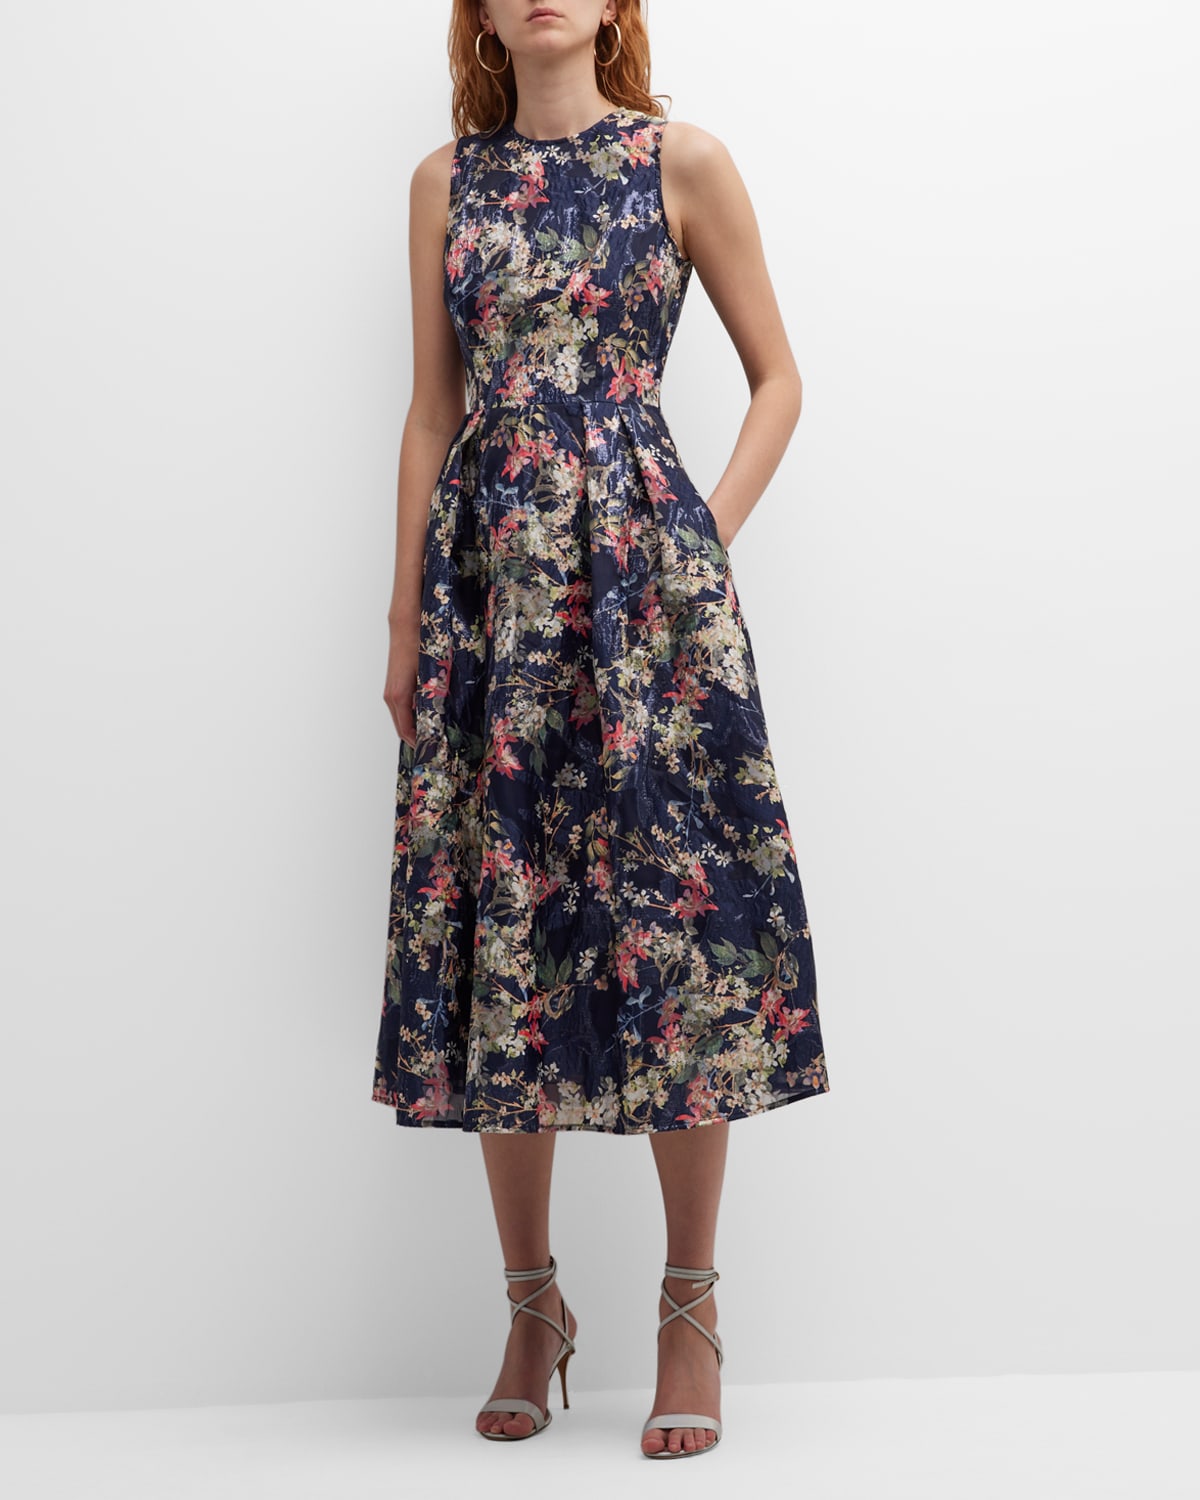 Jacquard Floral Dress | Neiman Marcus